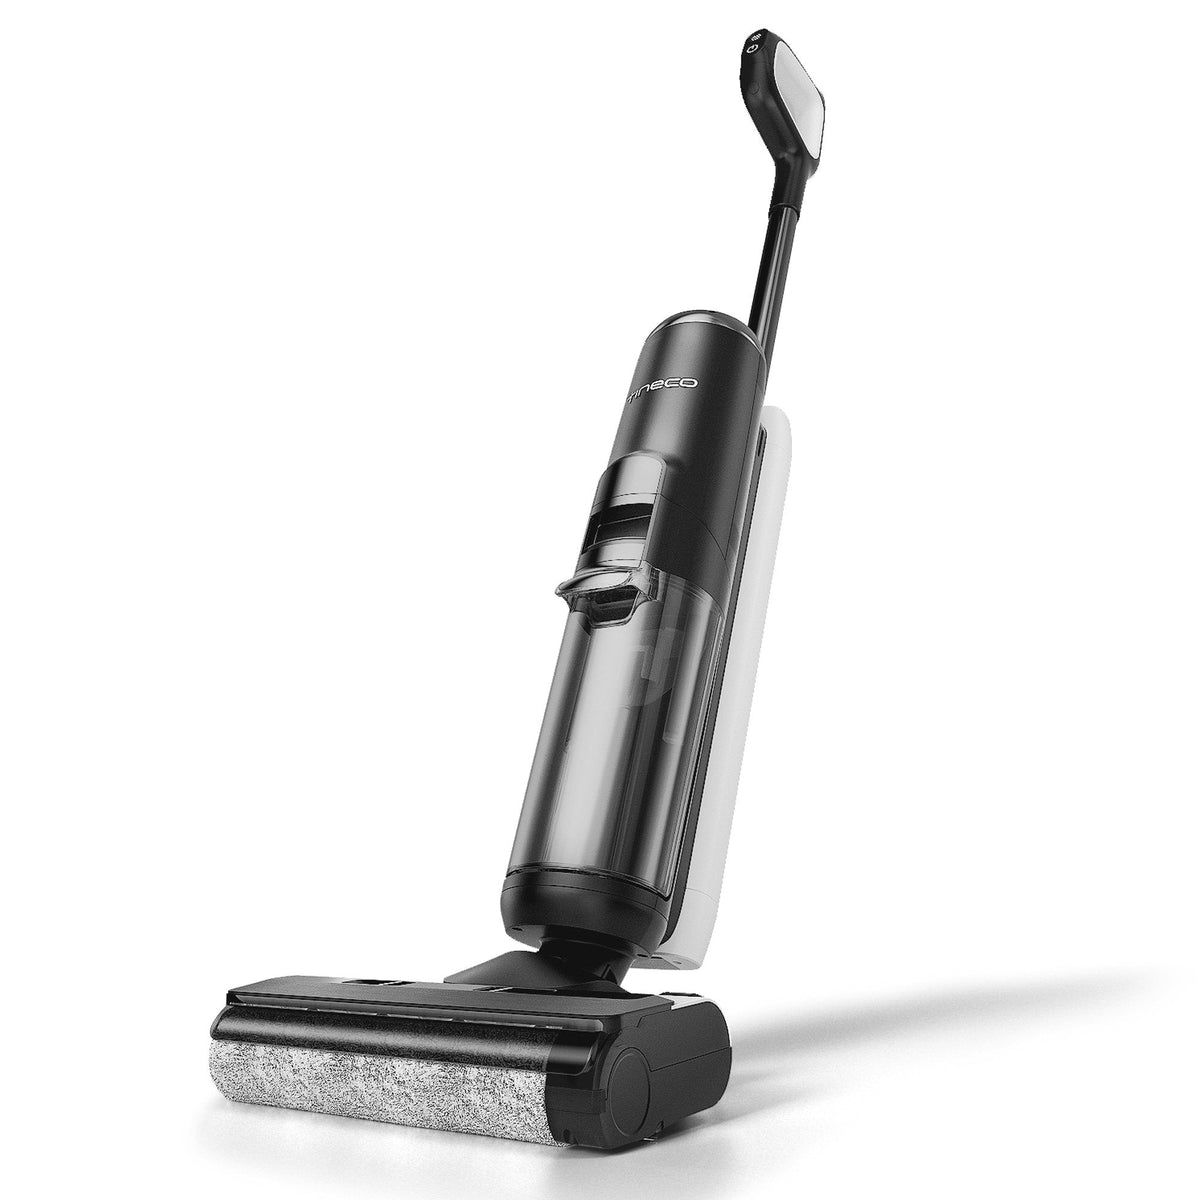 Tineco FLOOR ONE S5 | Smart Wet/Dry Vacuum Cleaner - Tineco CA